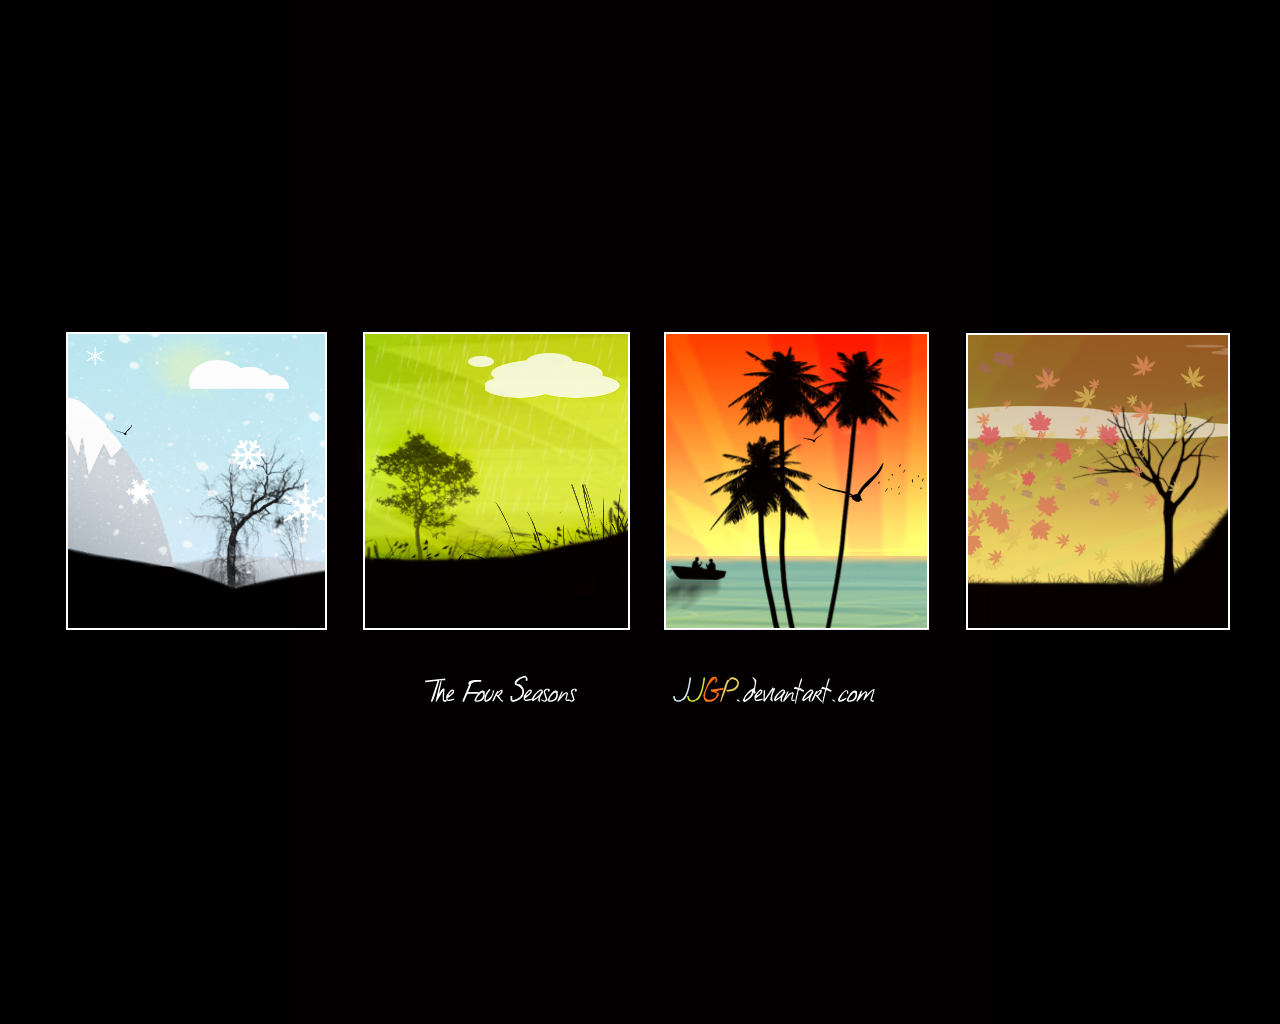 The 4 seasons wallpaper by JJGP on DeviantArt